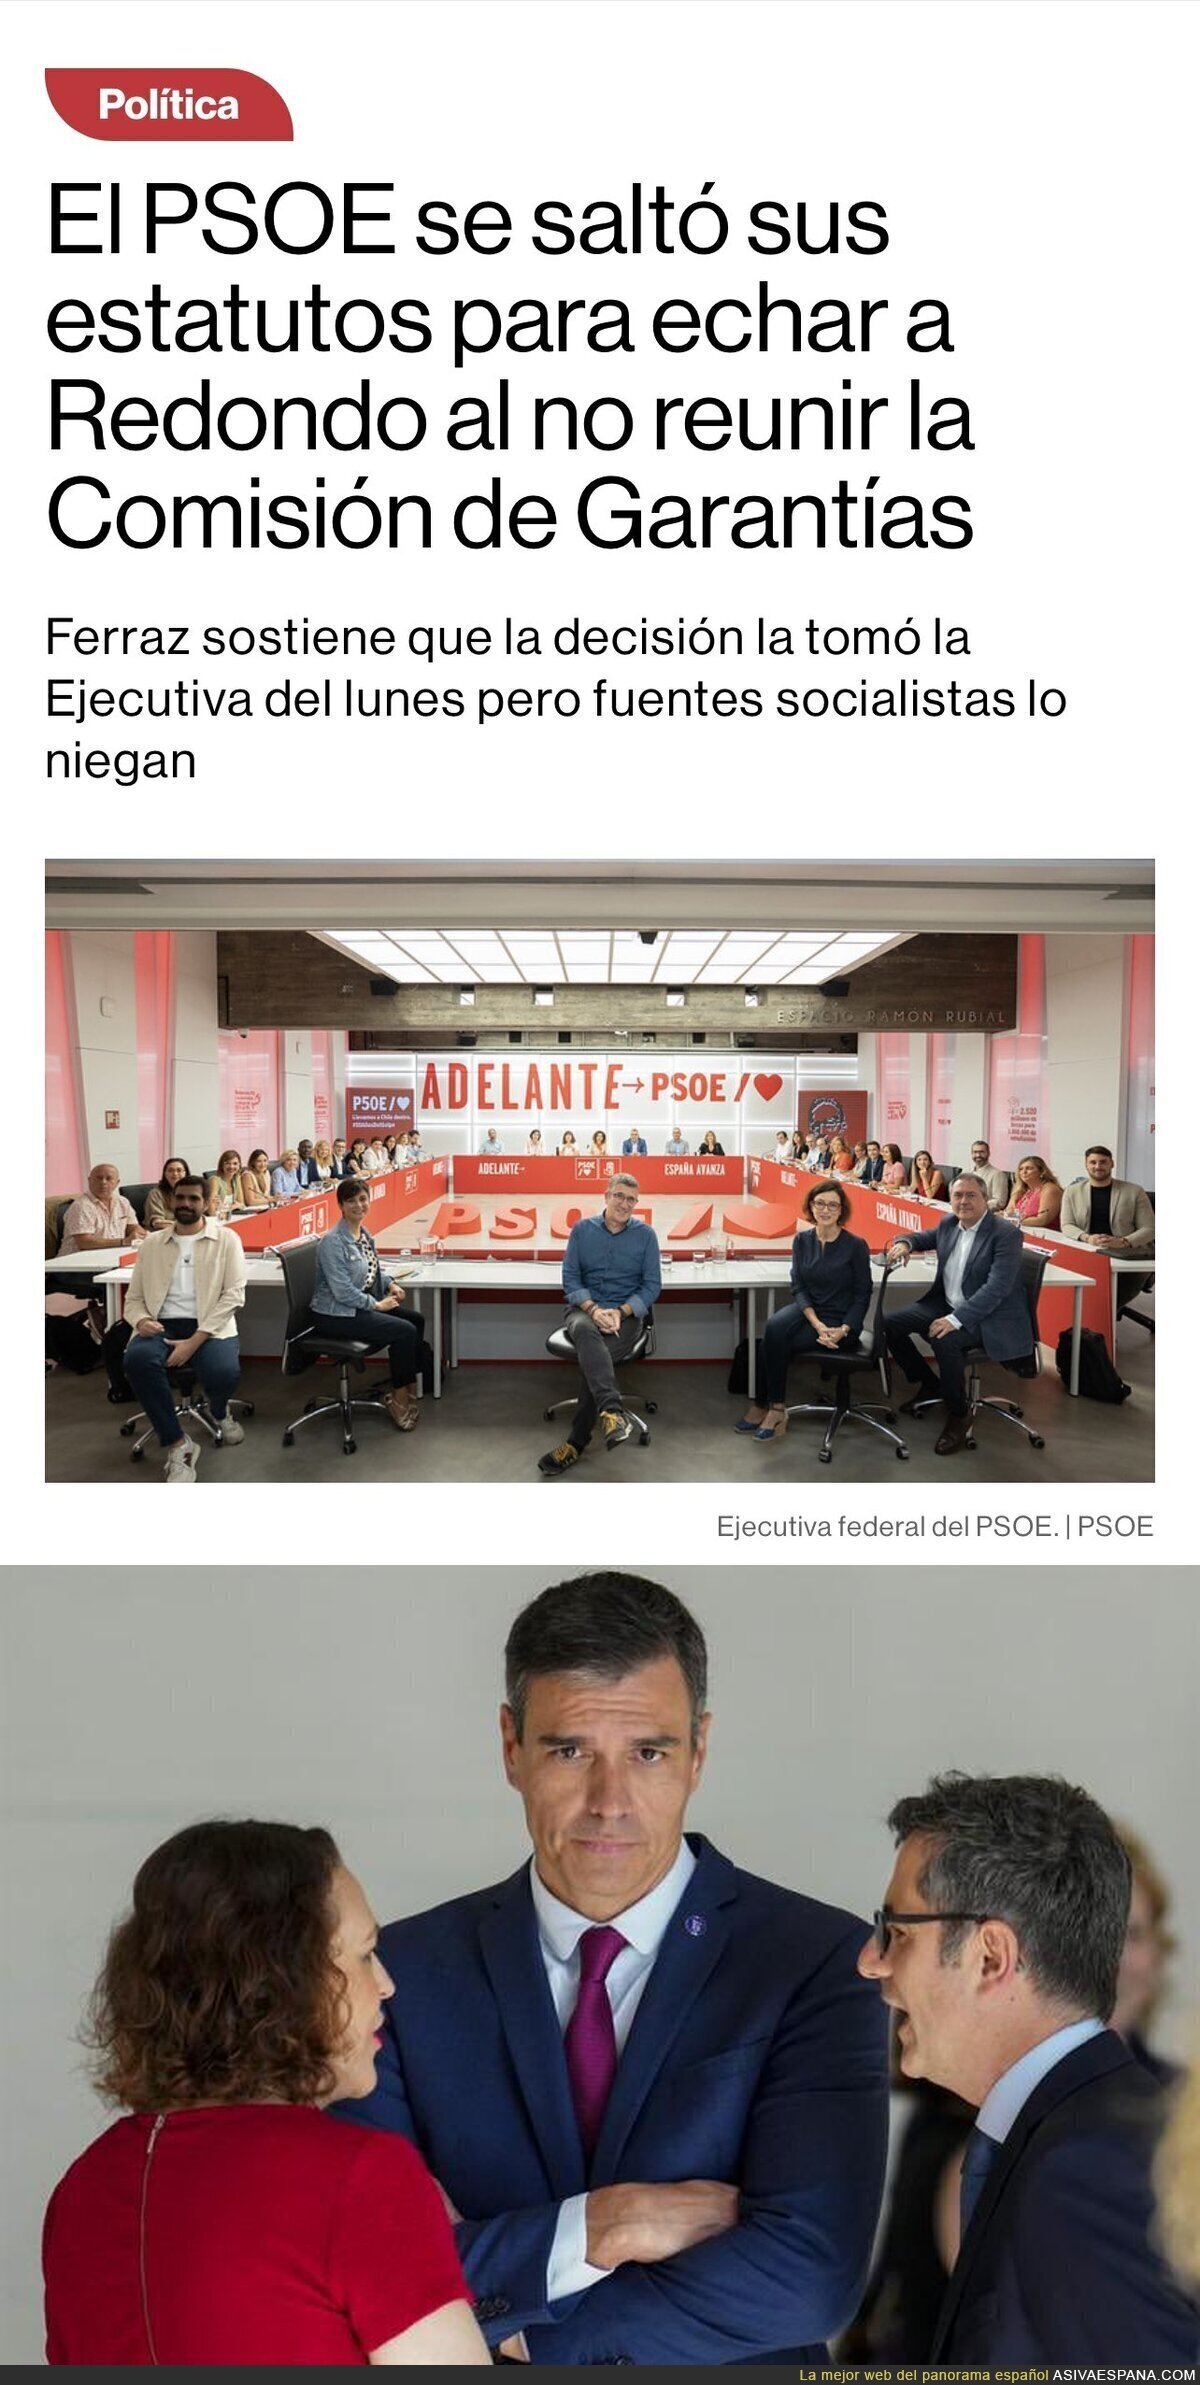 Siguen los escándalos en el PSOE